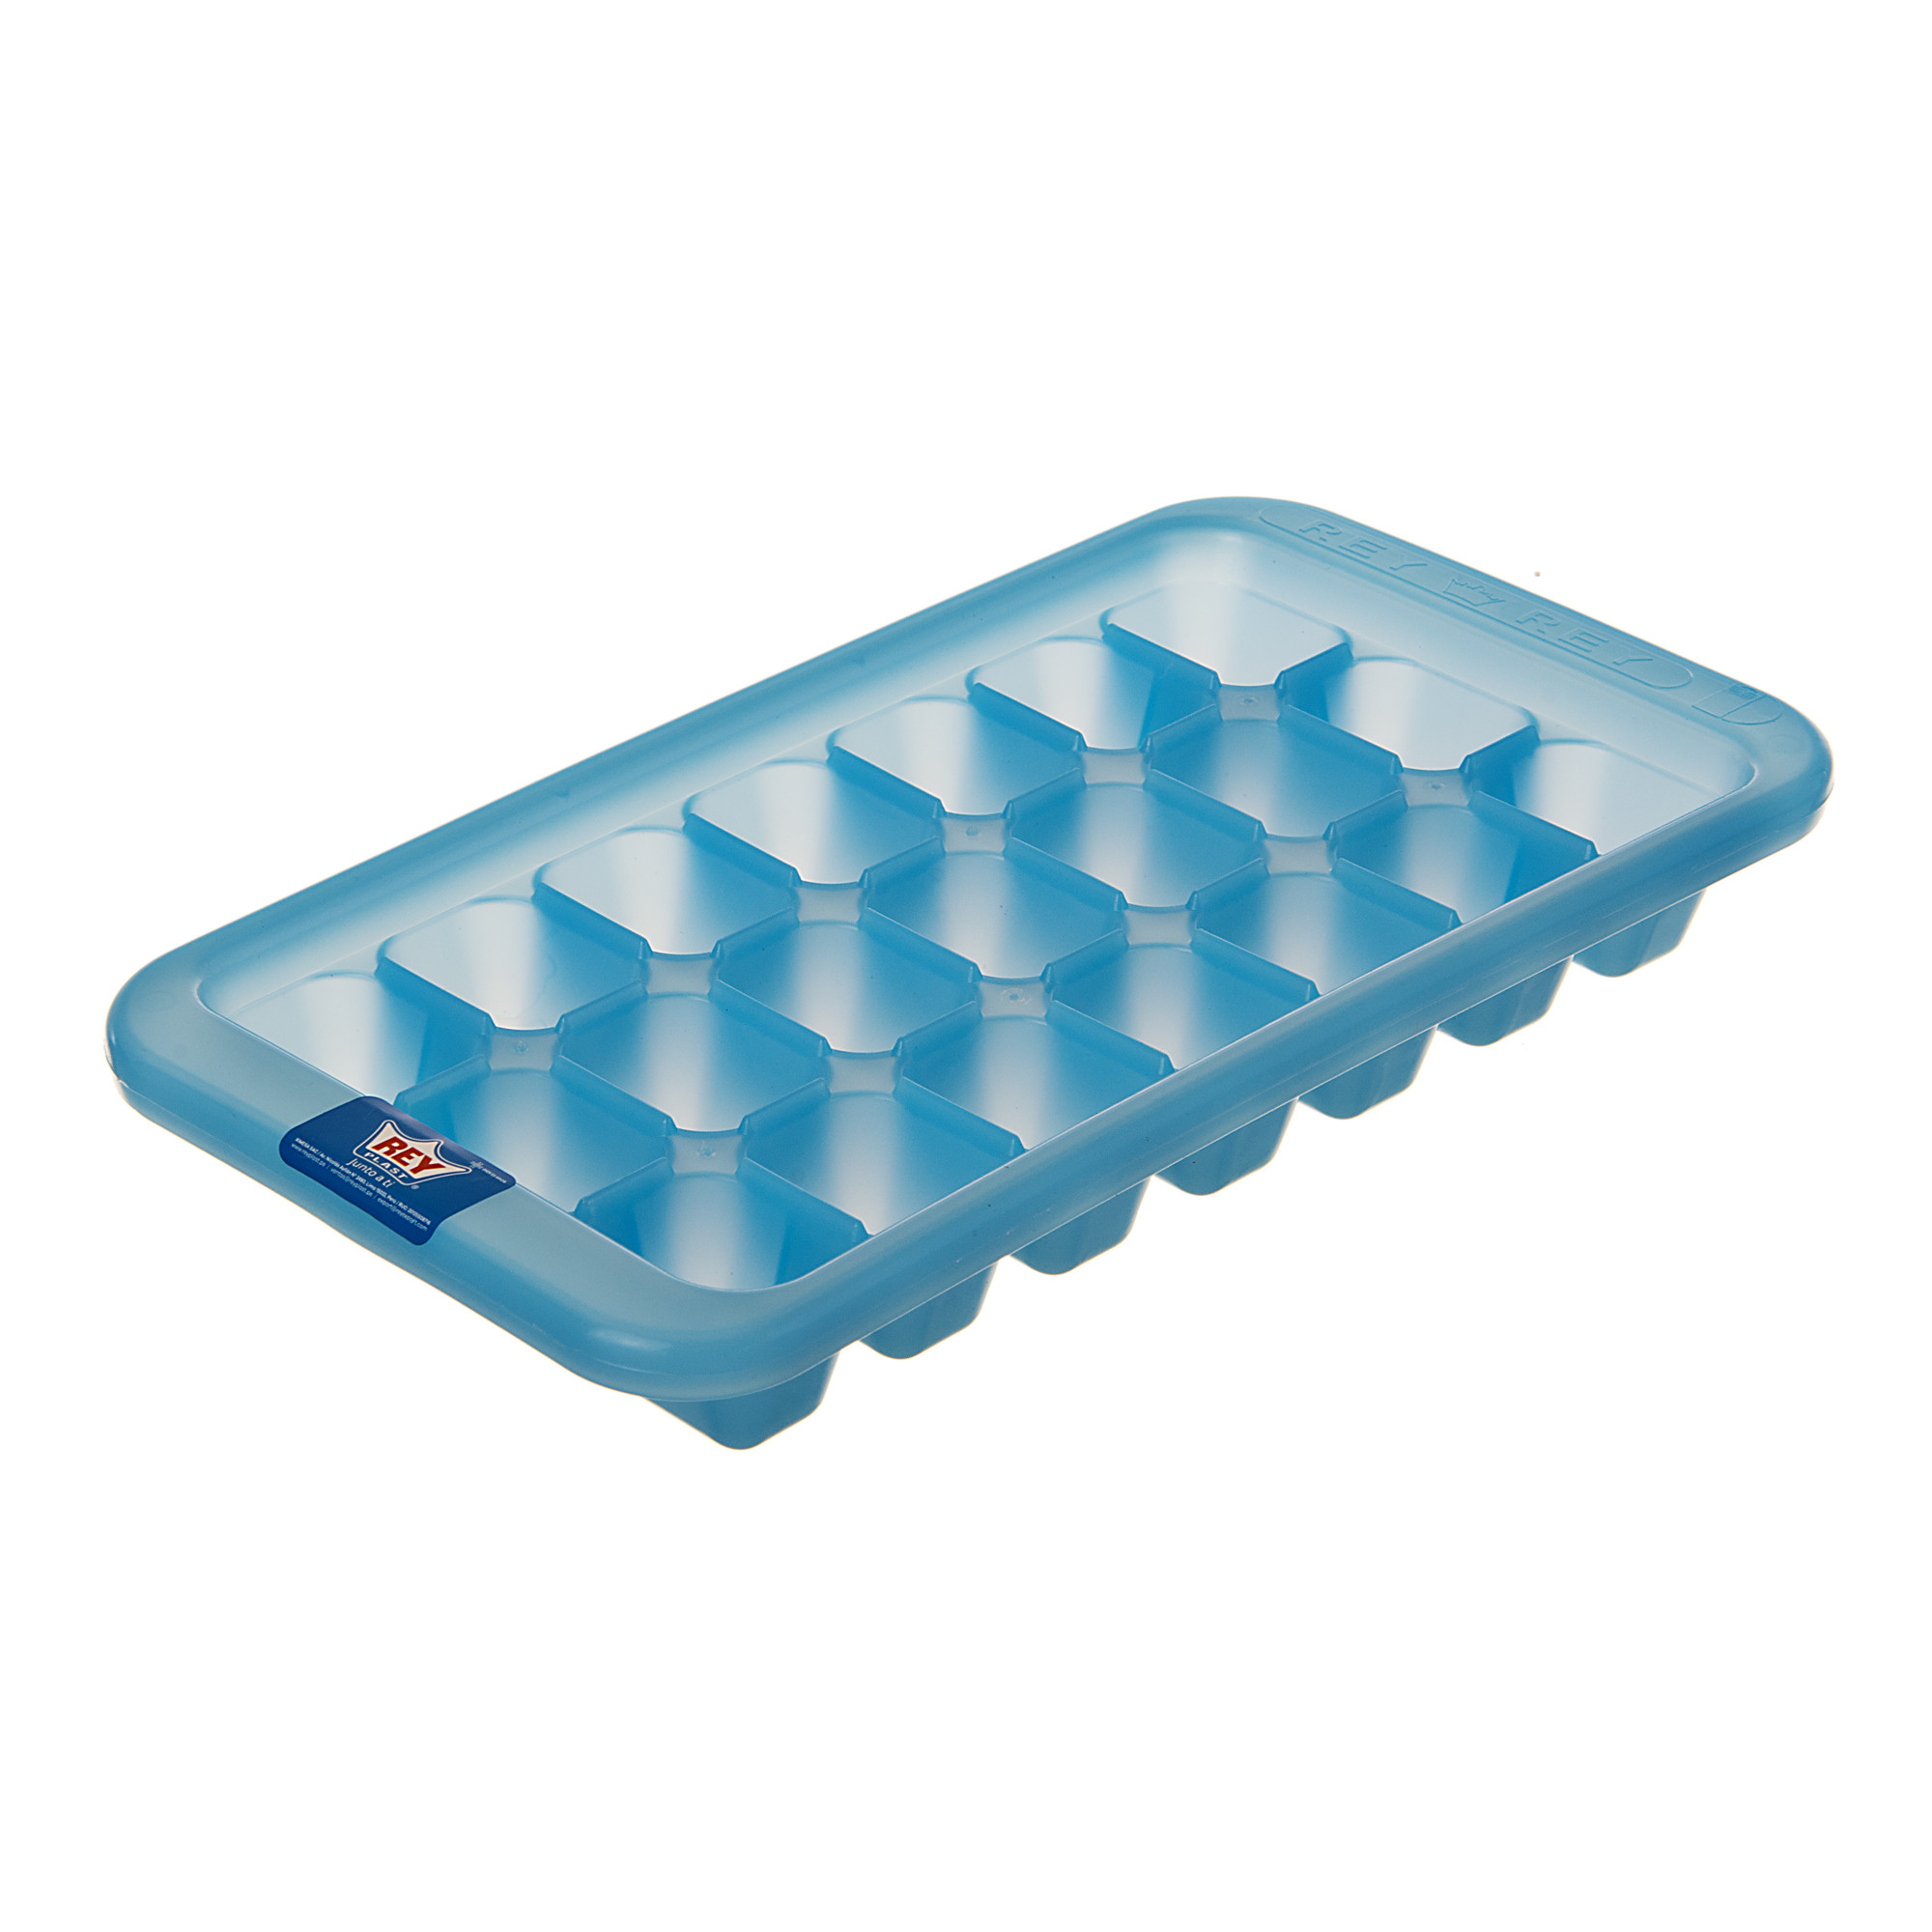 Cubeta para hielo 21 divisiones Surtido El Rey elaborada en plástico.